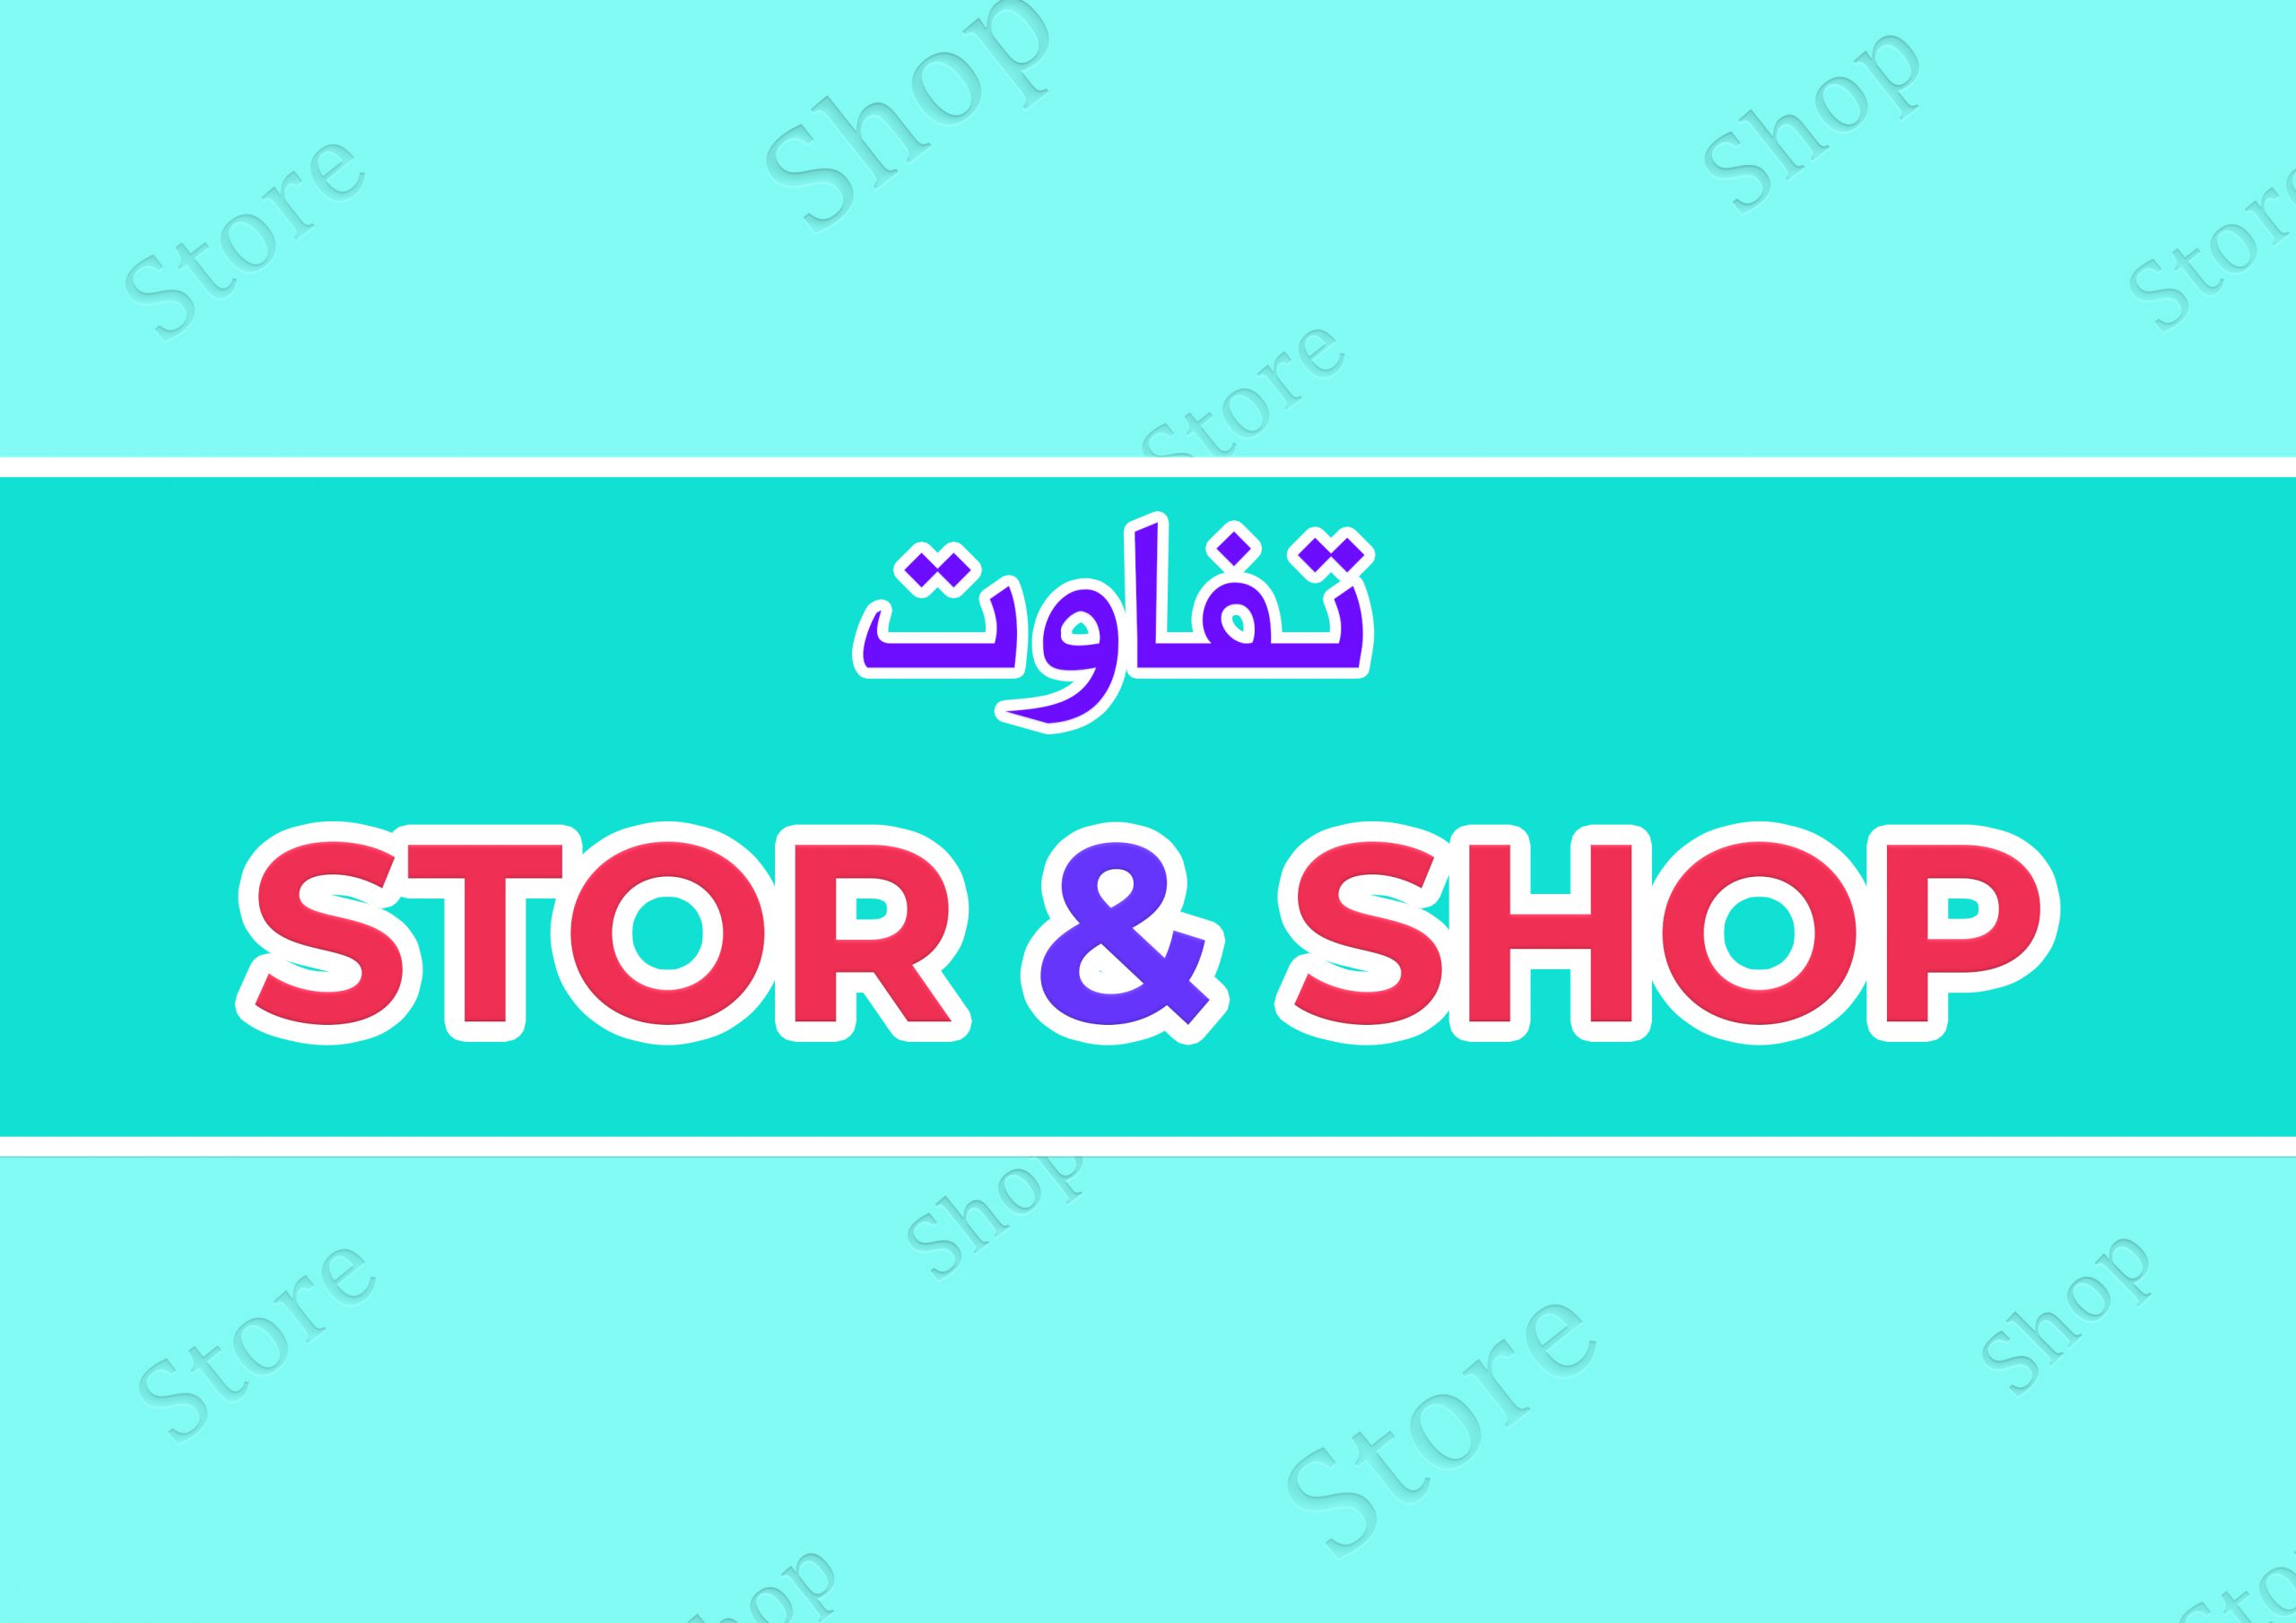 تفاوت shop و store ؟ در معنی و ترجمه و اسامی مغازه و فروشگاه ها به زبان انگلیسی